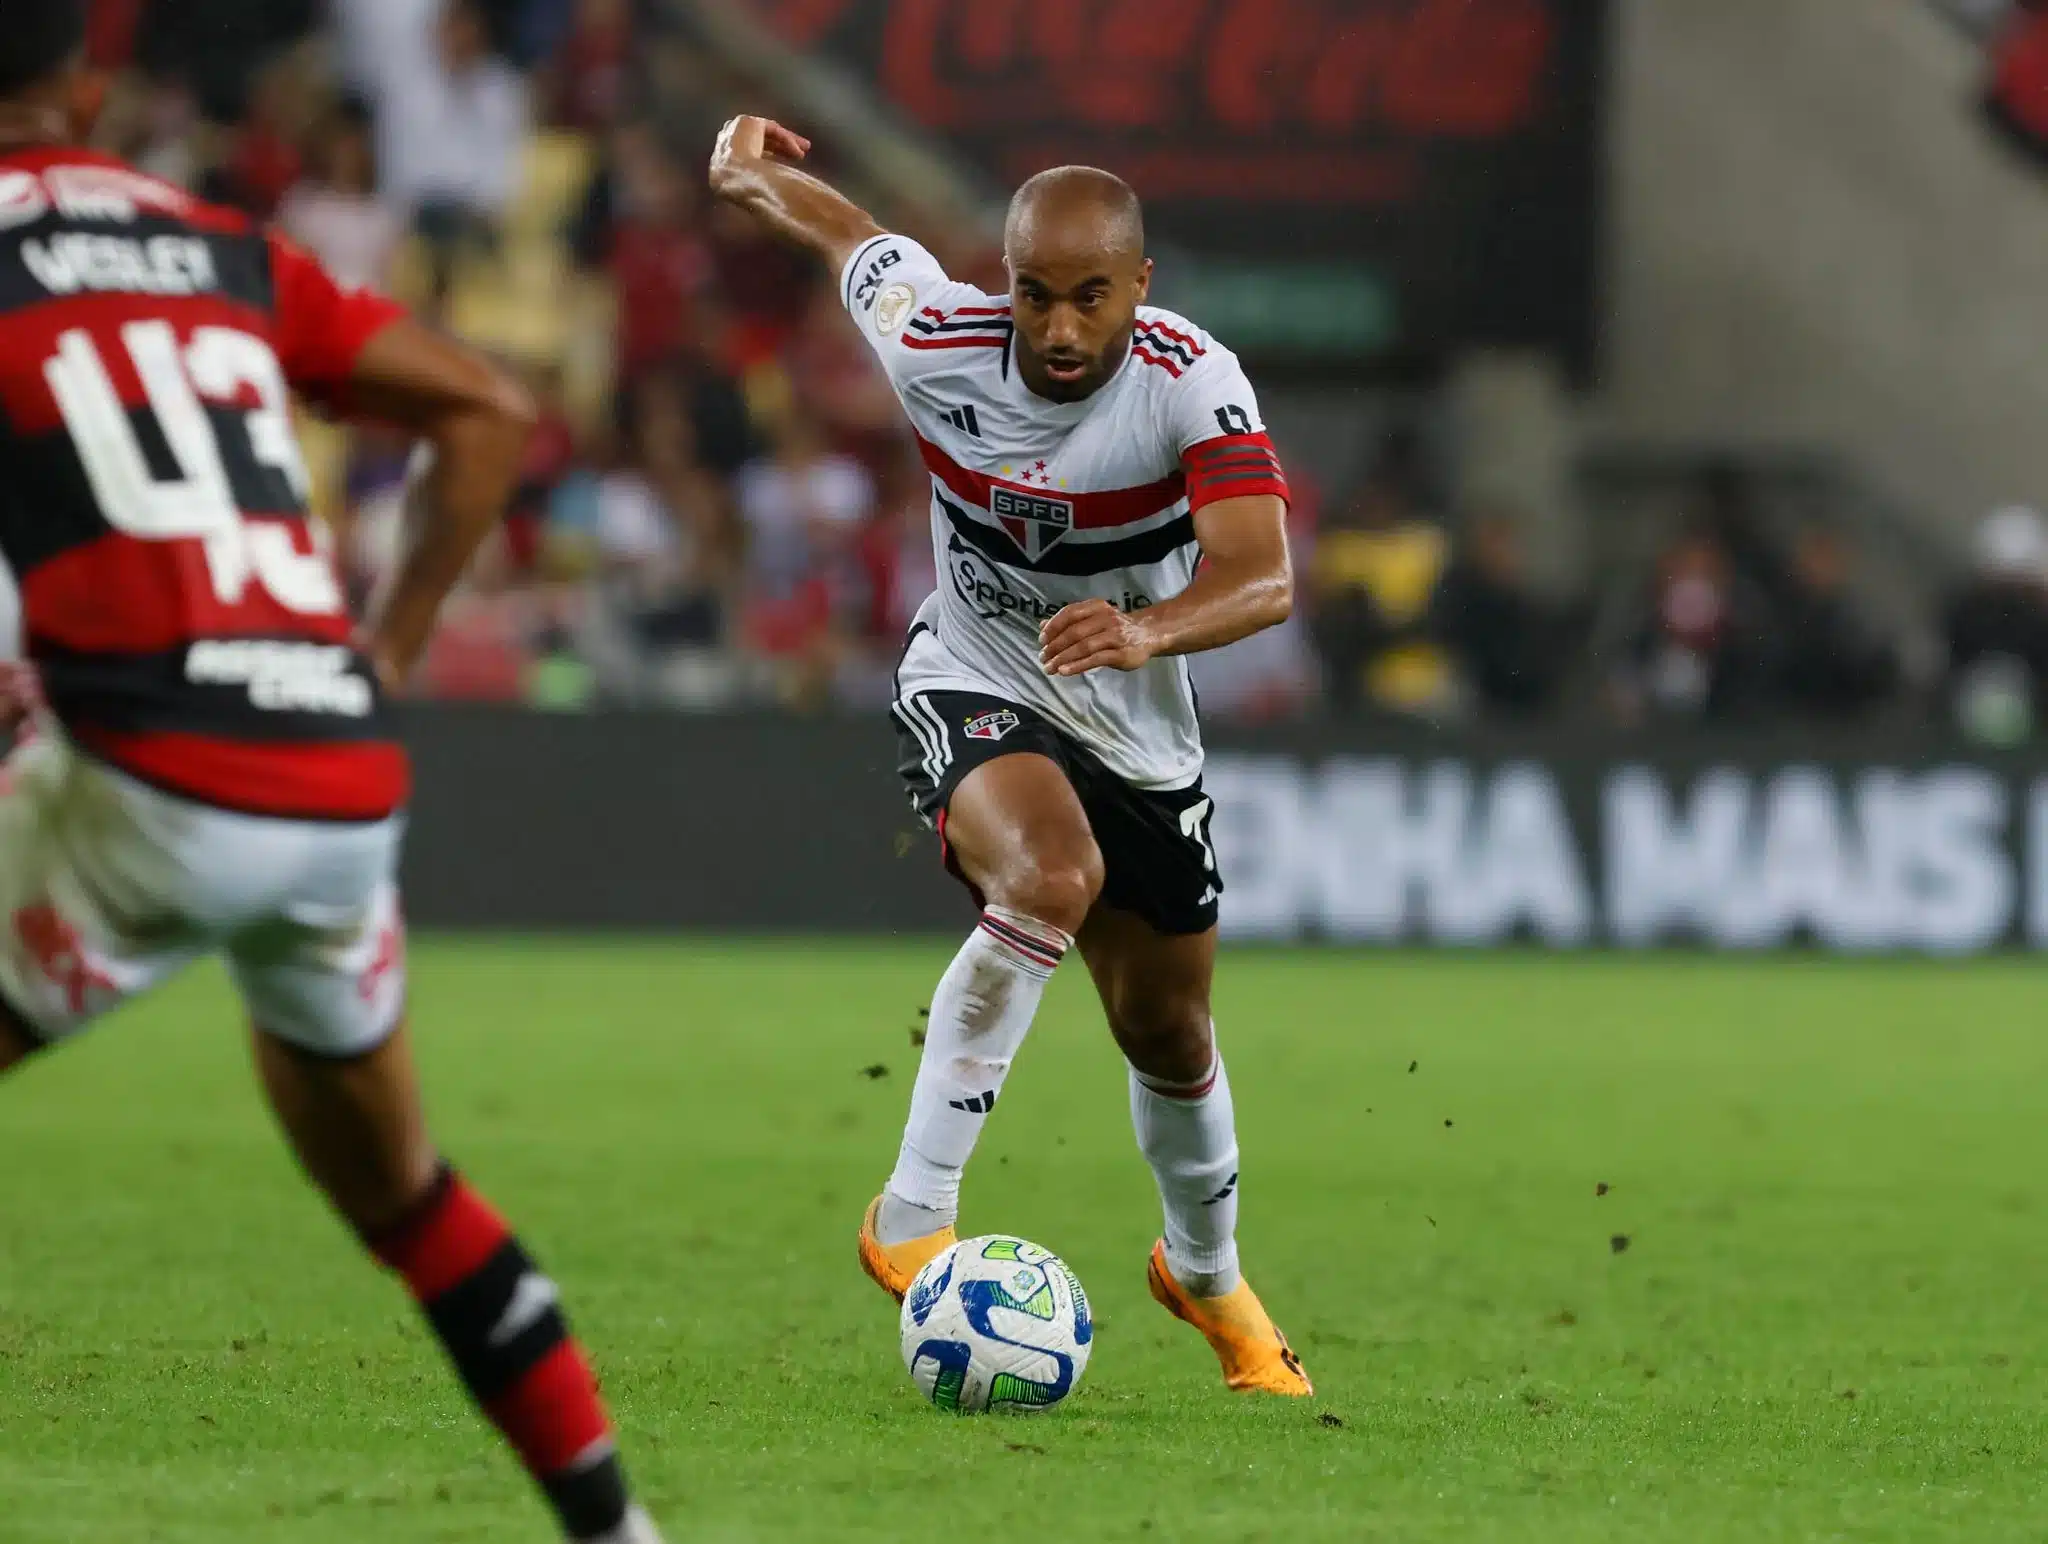 Lucas Moura sobre pênalti marcado para o Flamengo: "Bem duvidoso"